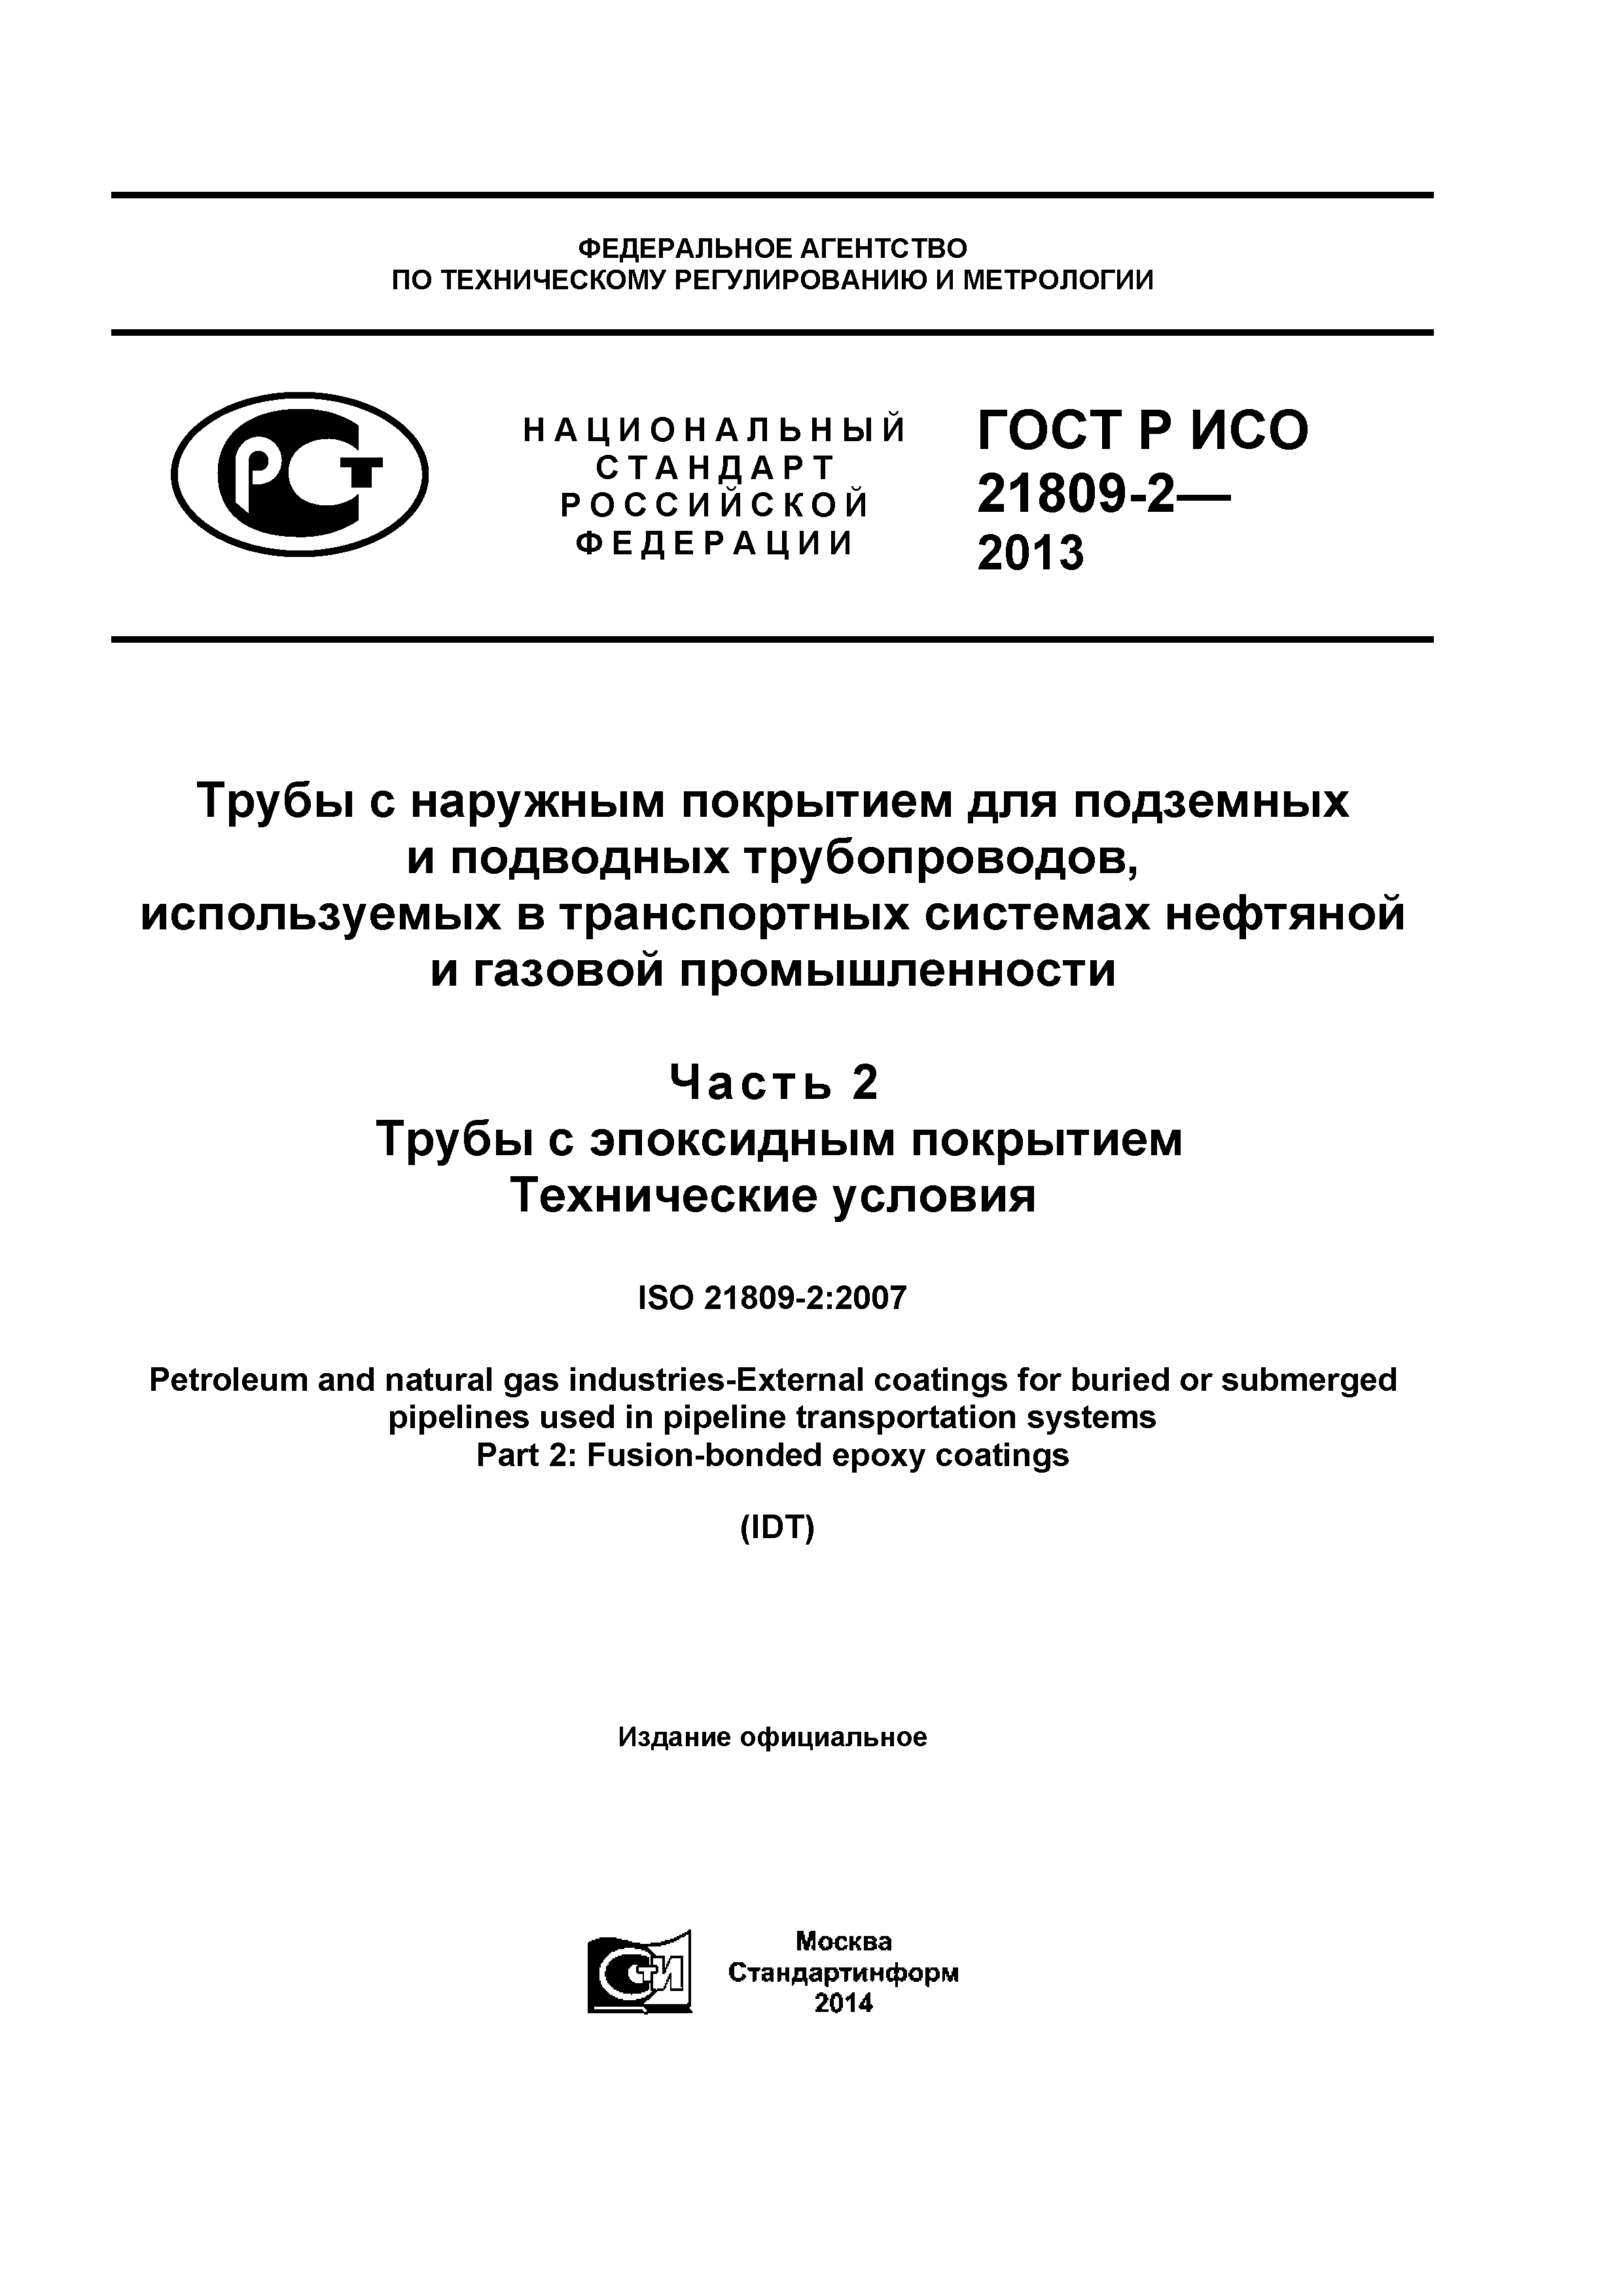 ГОСТ Р ИСО 21809-2-2013